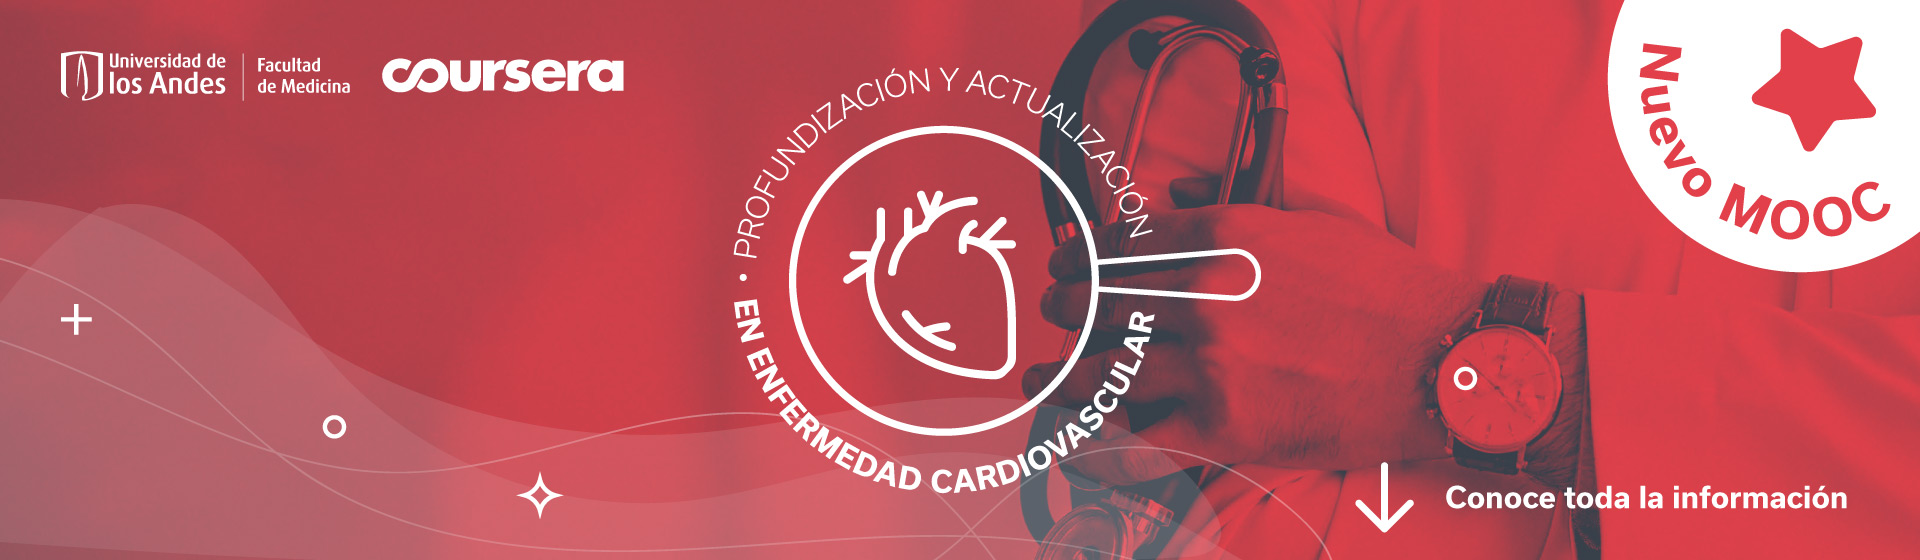 MOOC: Profundización y actualización en enfermedad cardiovascular